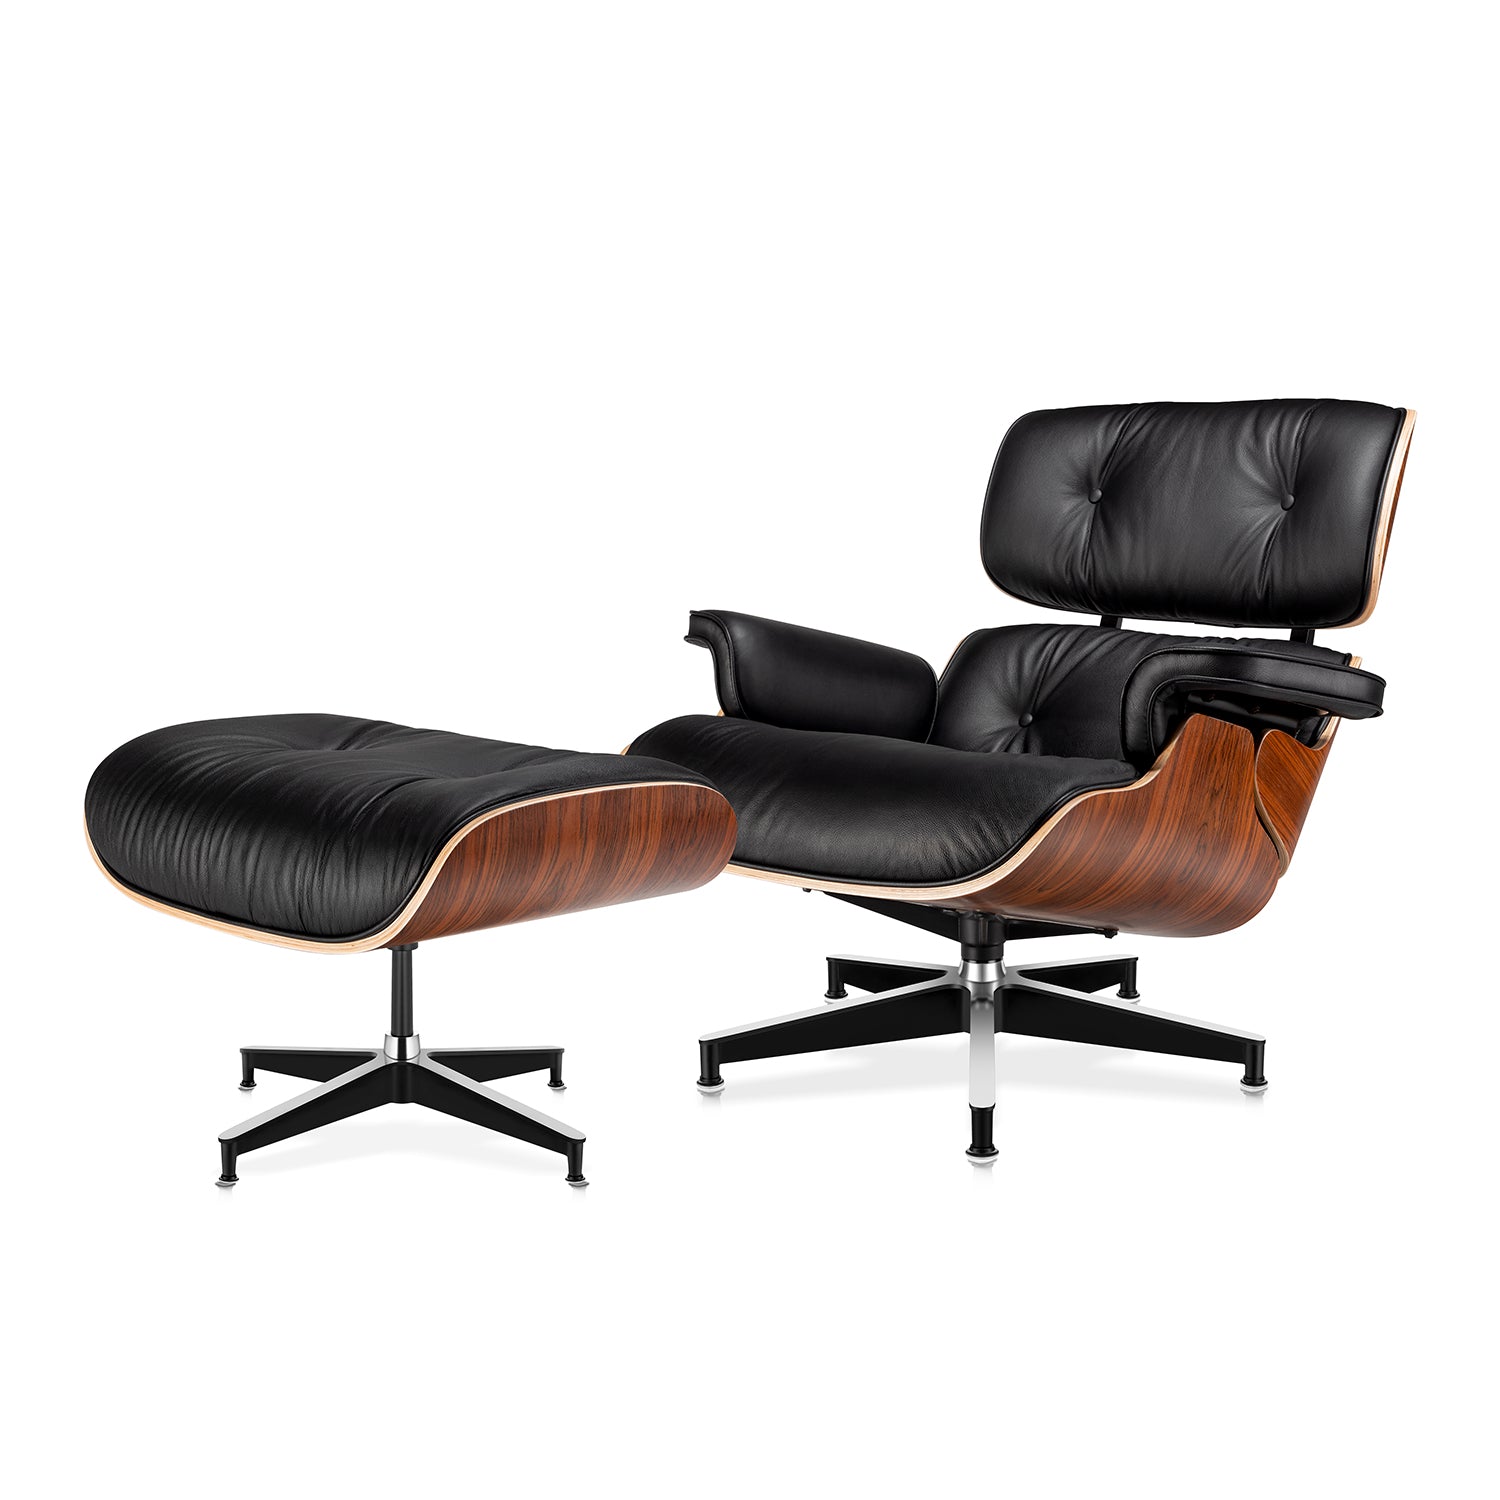 Verrijken auteur kapsel Eames Lounge Chair & Ottoman